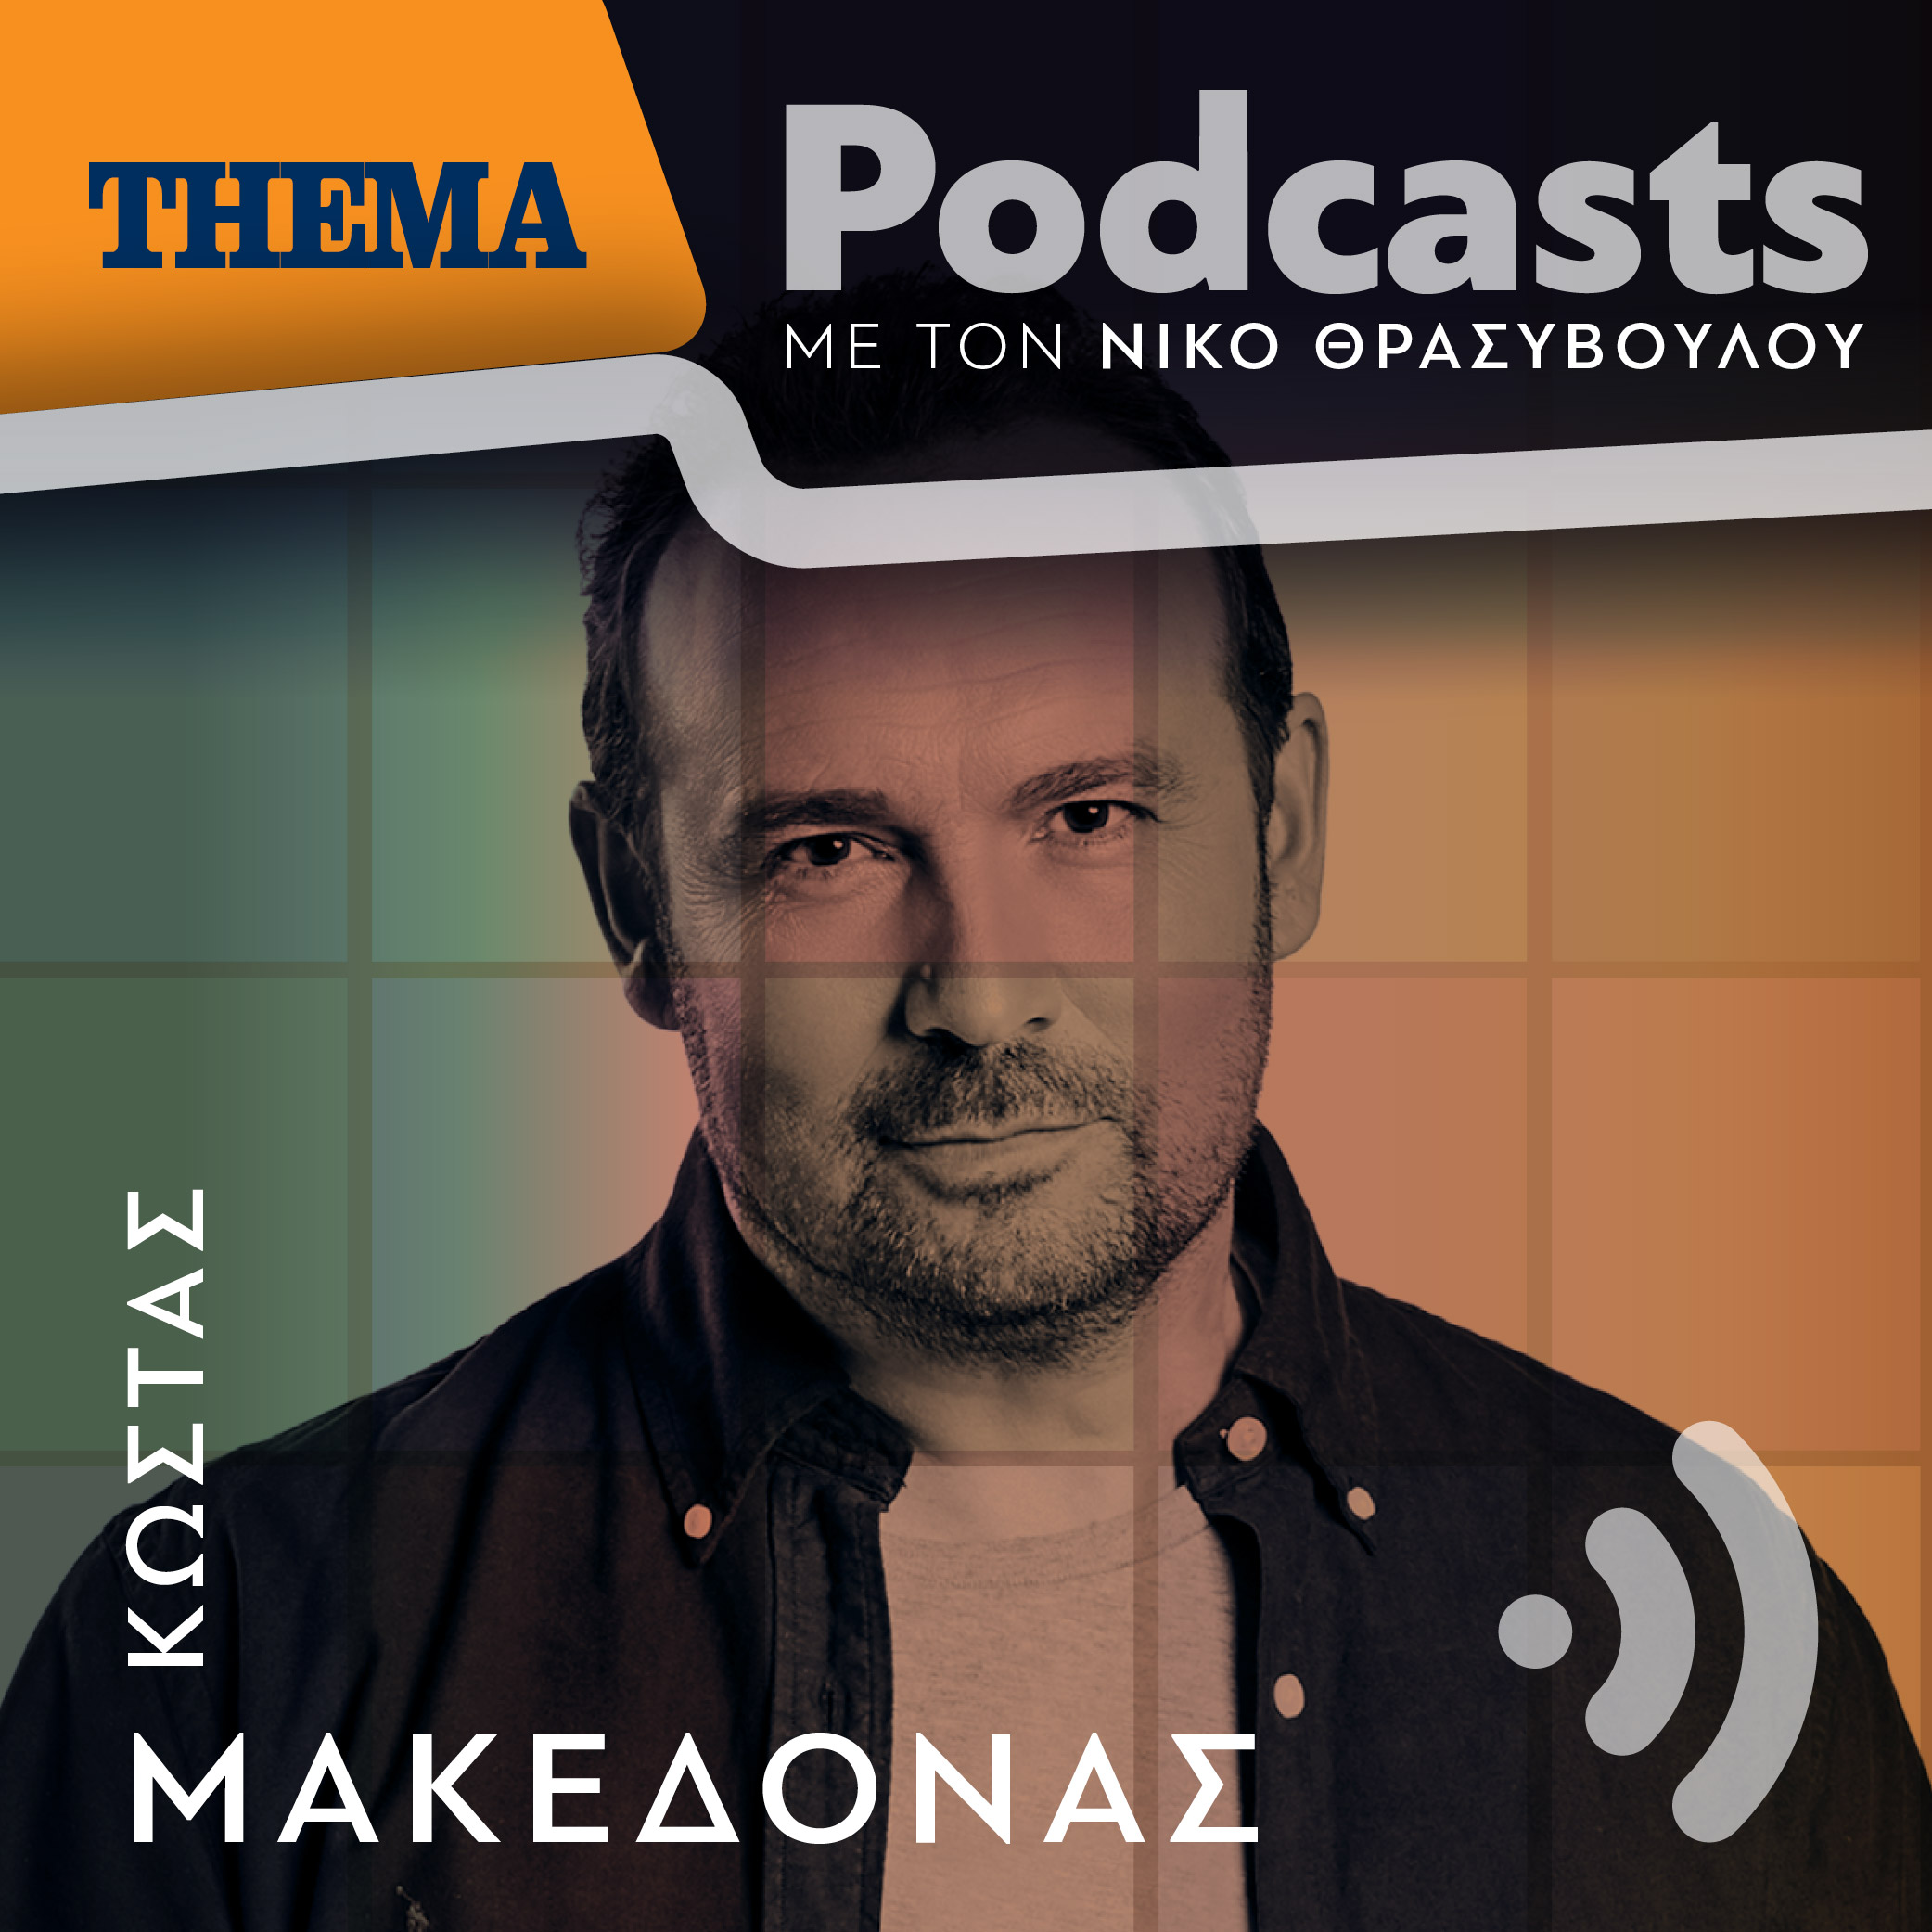 Κώστας Μακεδόνας: «Δεν μπορεί να ζήσει ο κόσμος μόνο με ψωμί, θέλει θέαμα και ψυχαγωγία»